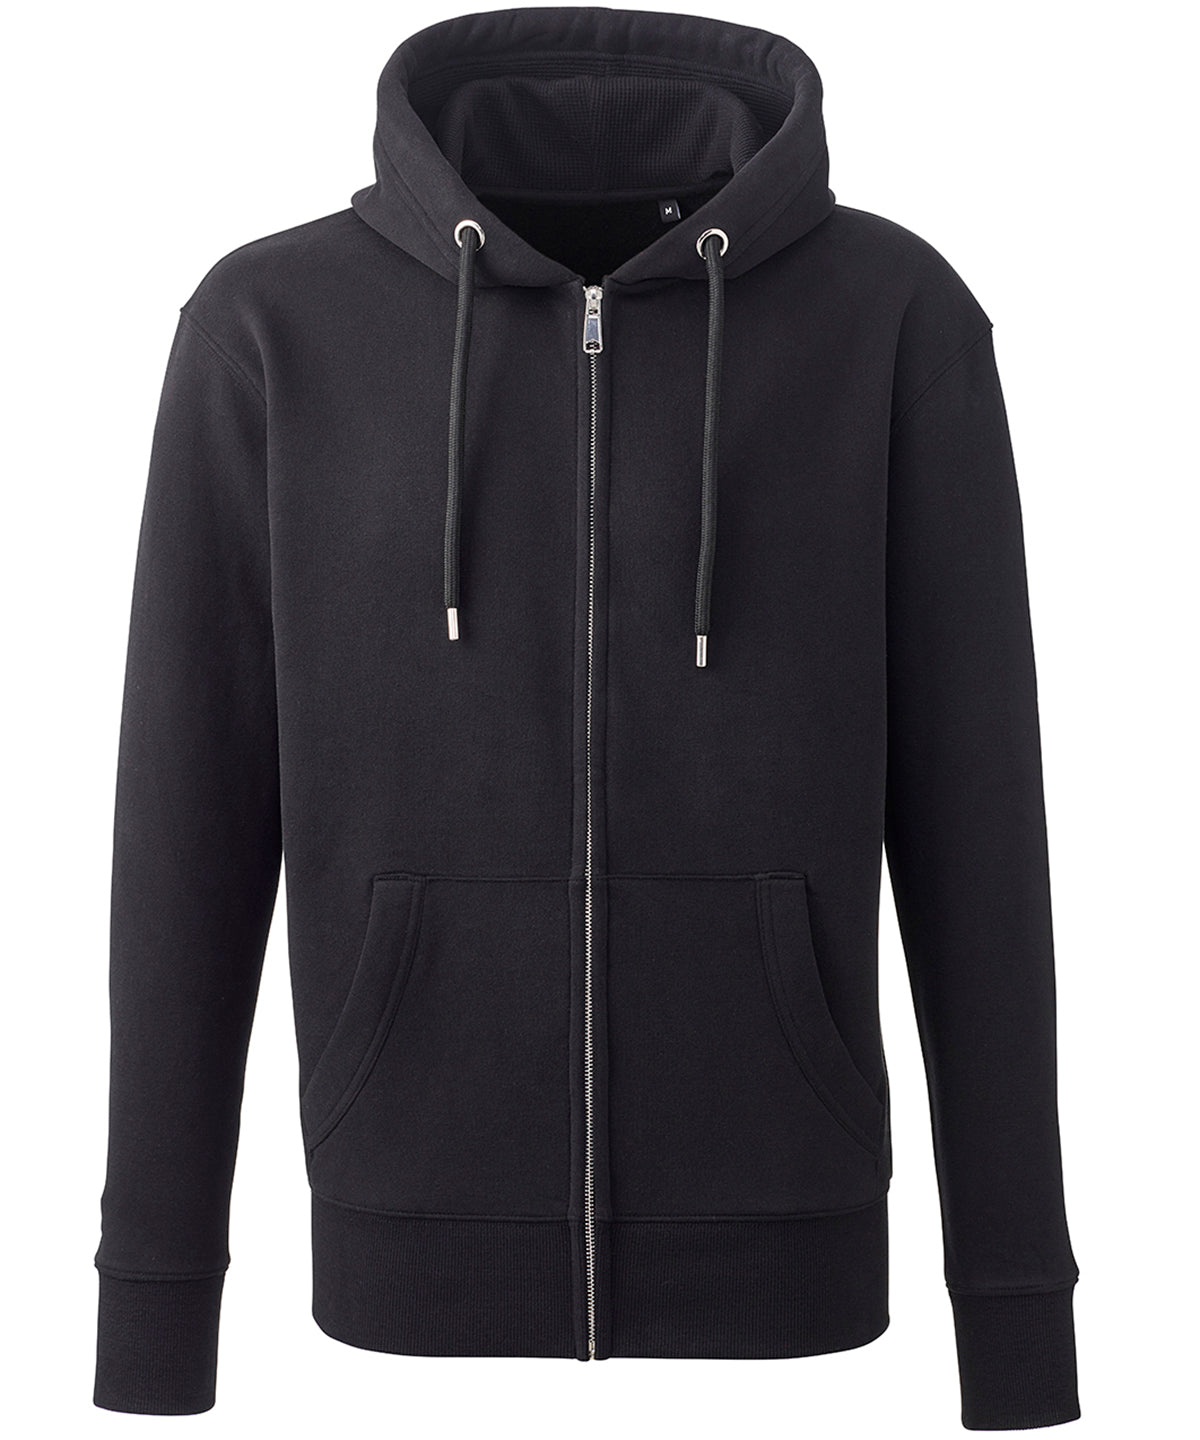 Personalised Hoodies - Black Anthem Men's Anthem full-zip hoodie